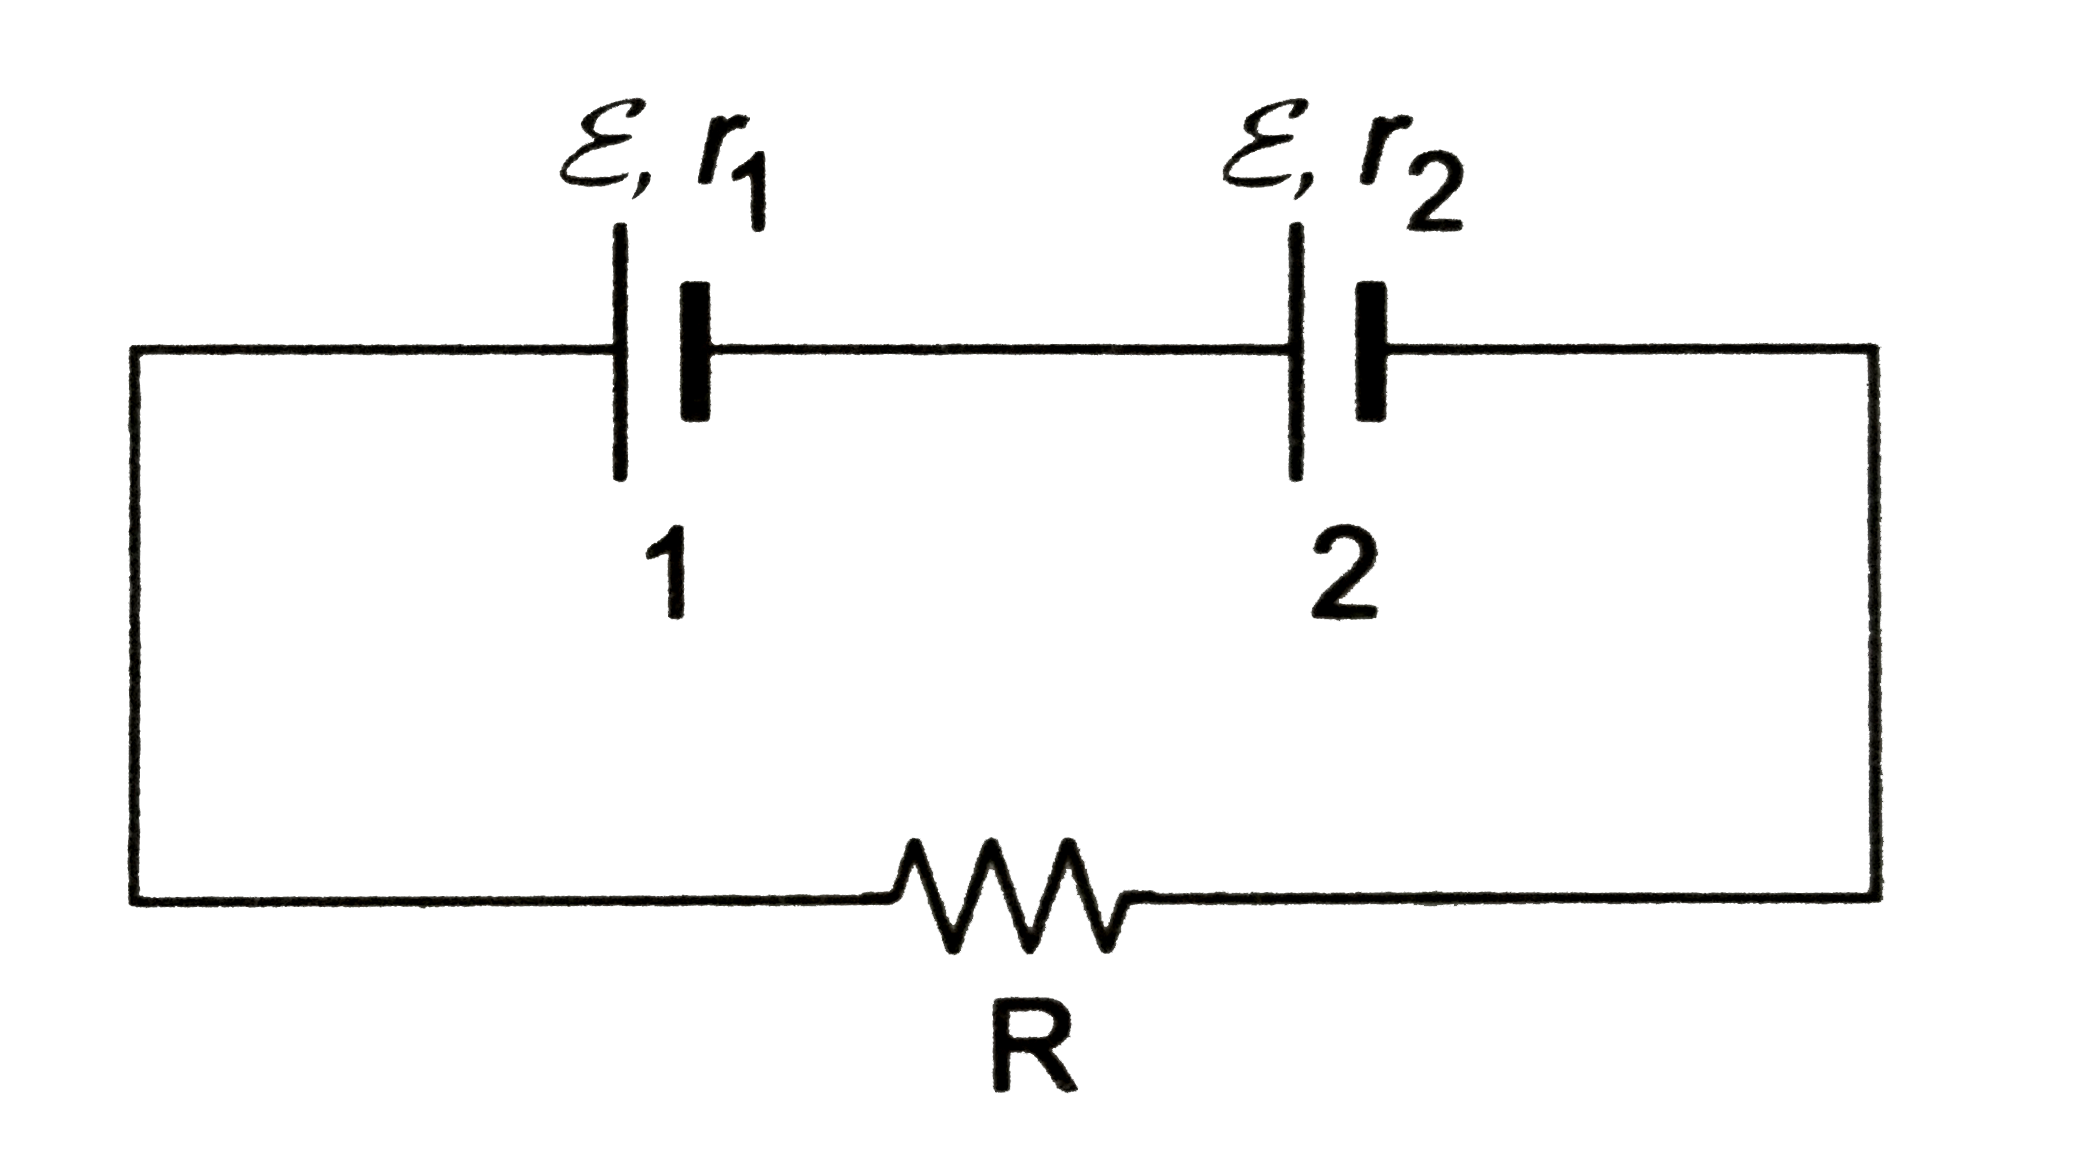 प्रदर्शित परिपथ में दोनों सेल 1 तथा 2 के विधुत-वाहक बल epsi  समान है, लेकिन उनके आंतरिक प्रतिरोध r(1) तथा r(2) भिन्न है बाह्य प्रतिरोध R स्थायी धारा प्रवाहित हो रही है।